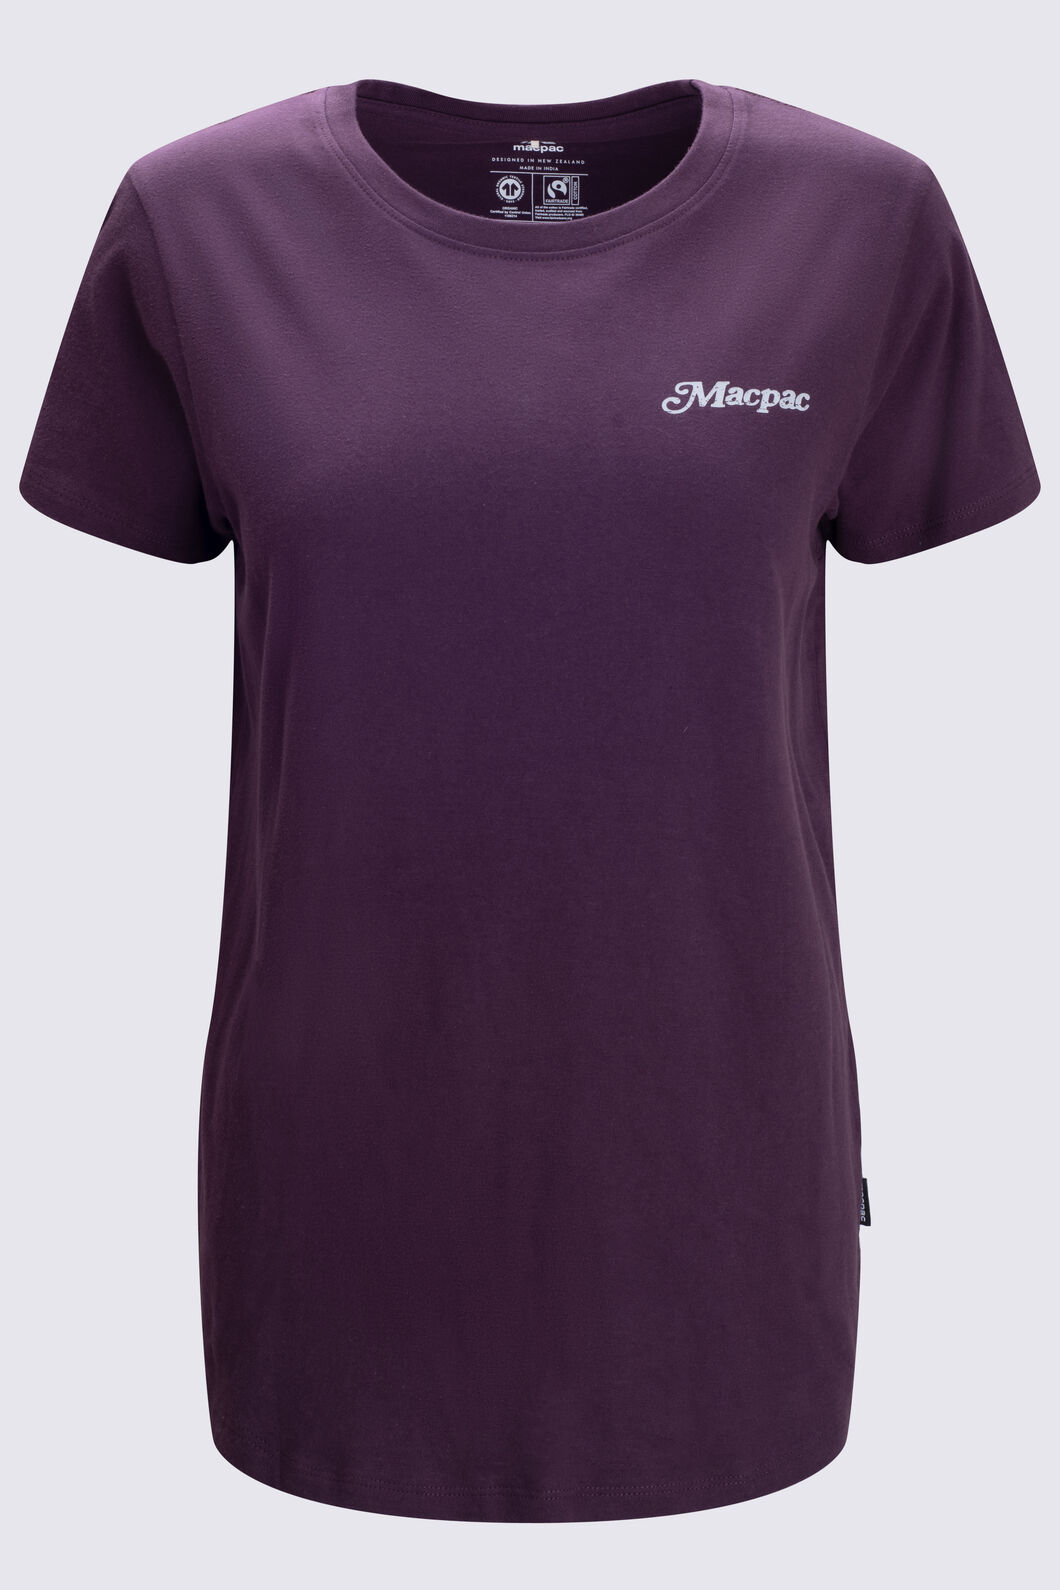 Macpac Women's Vista T-Shirt | Macpac